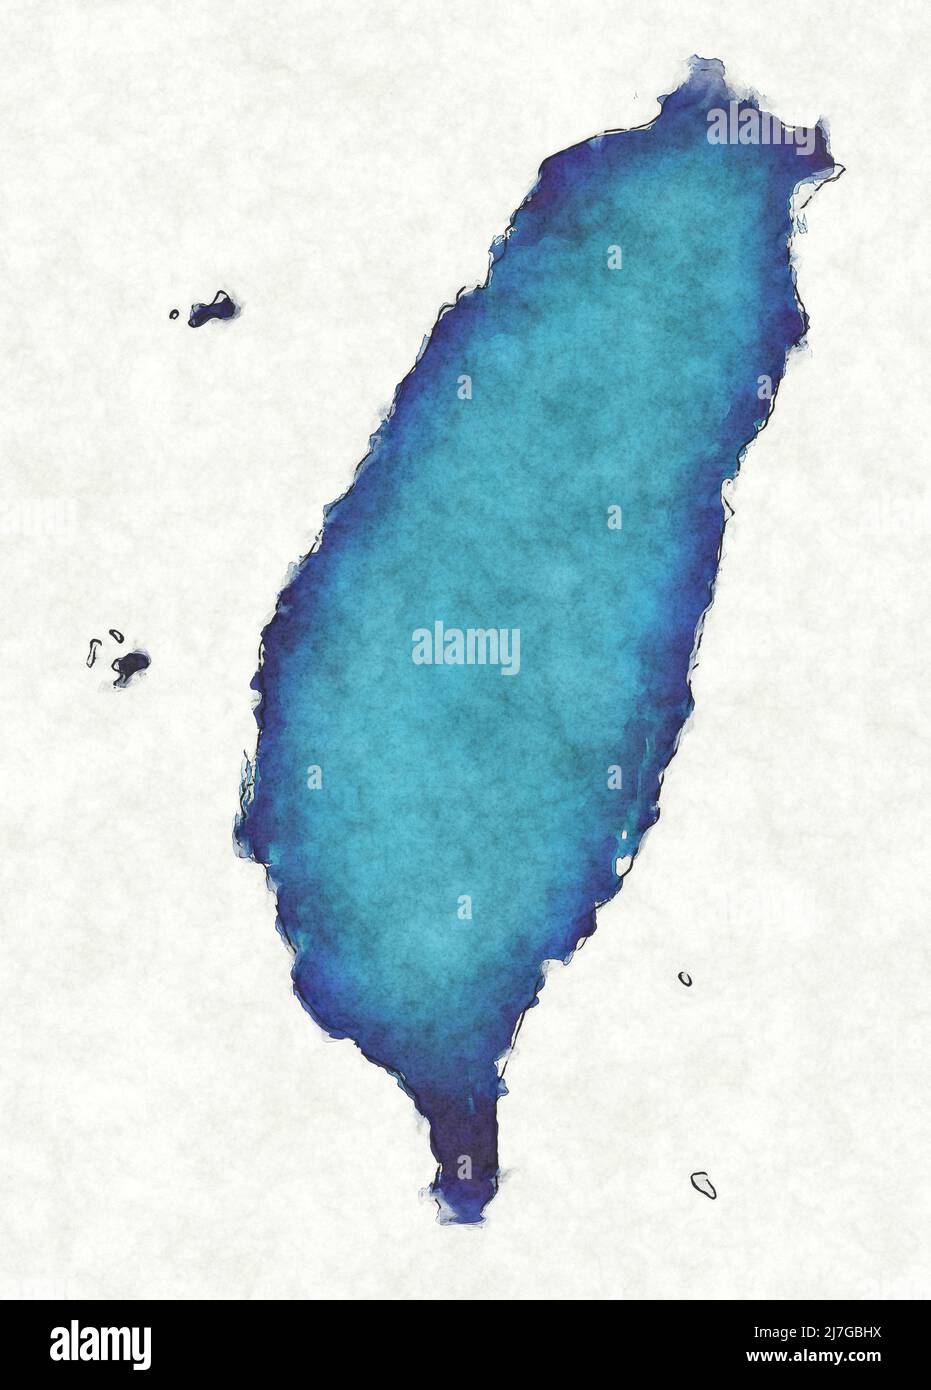 Mappa di Taiwan con linee tracciate e illustrazione dell'acquerello blu Foto Stock